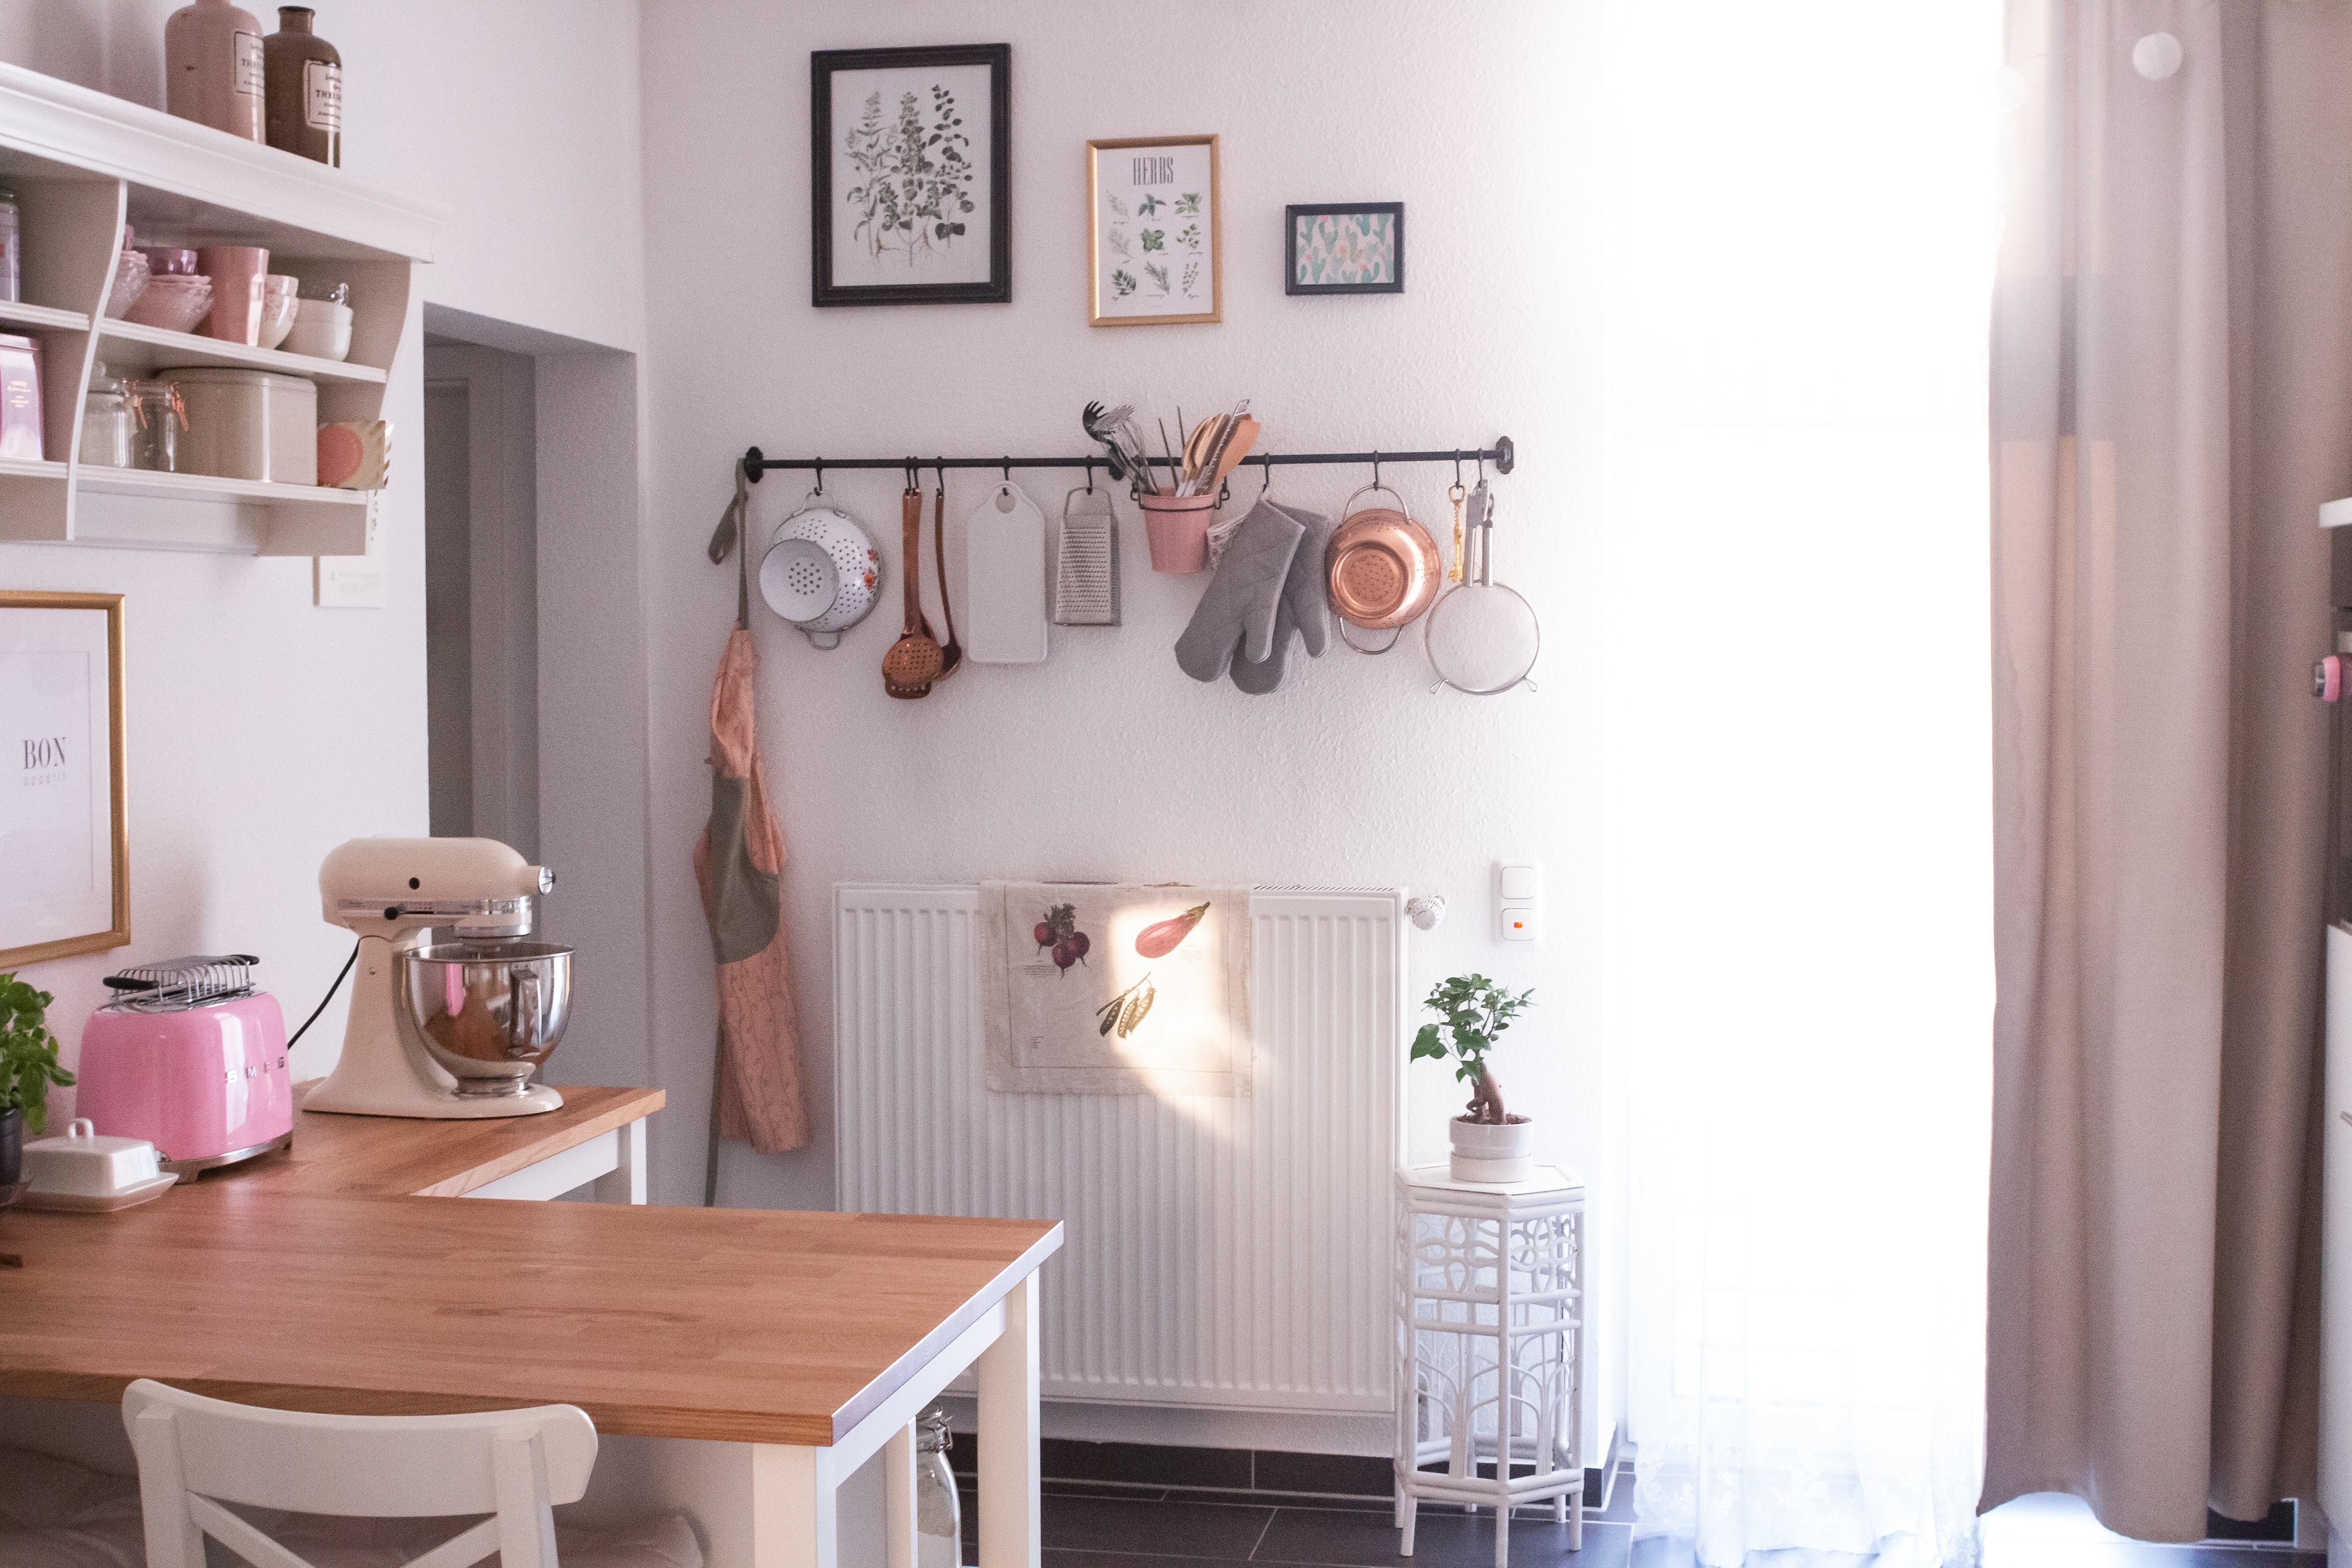 Ein kleiner Blick in unsere Küche #küche #Altbau #bonappetit #cozy #home #kitchen